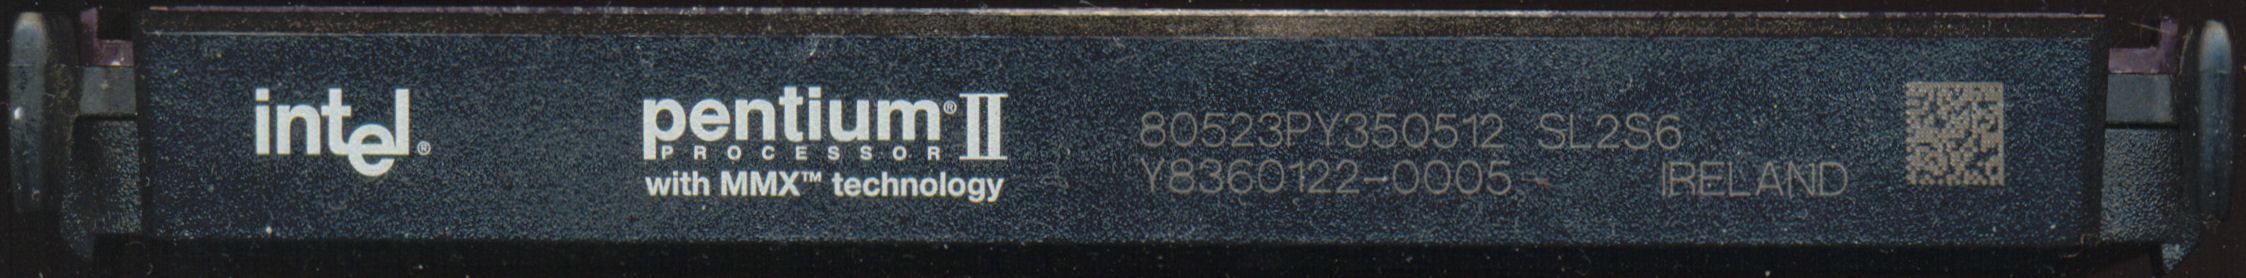 Intel PII 80523PY350512 SL2S6 IRELAND